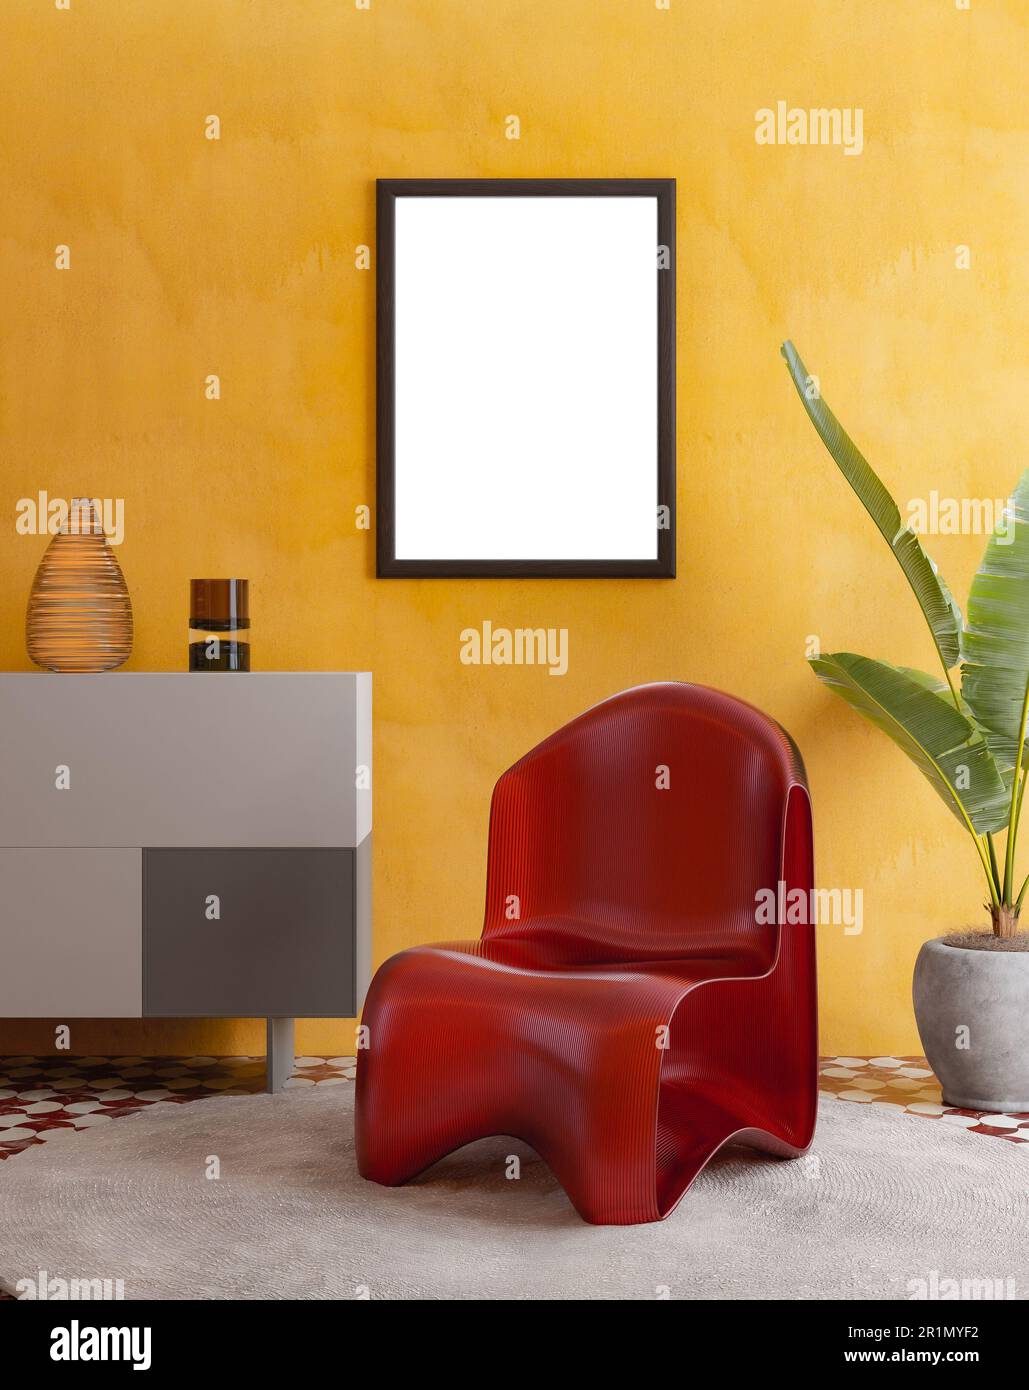 Cornice fotografica vuota mockup appeso su sfondo giallo parete. Sedia in vetro, Arte, Poster Display. Interni moderni. Foto Stock